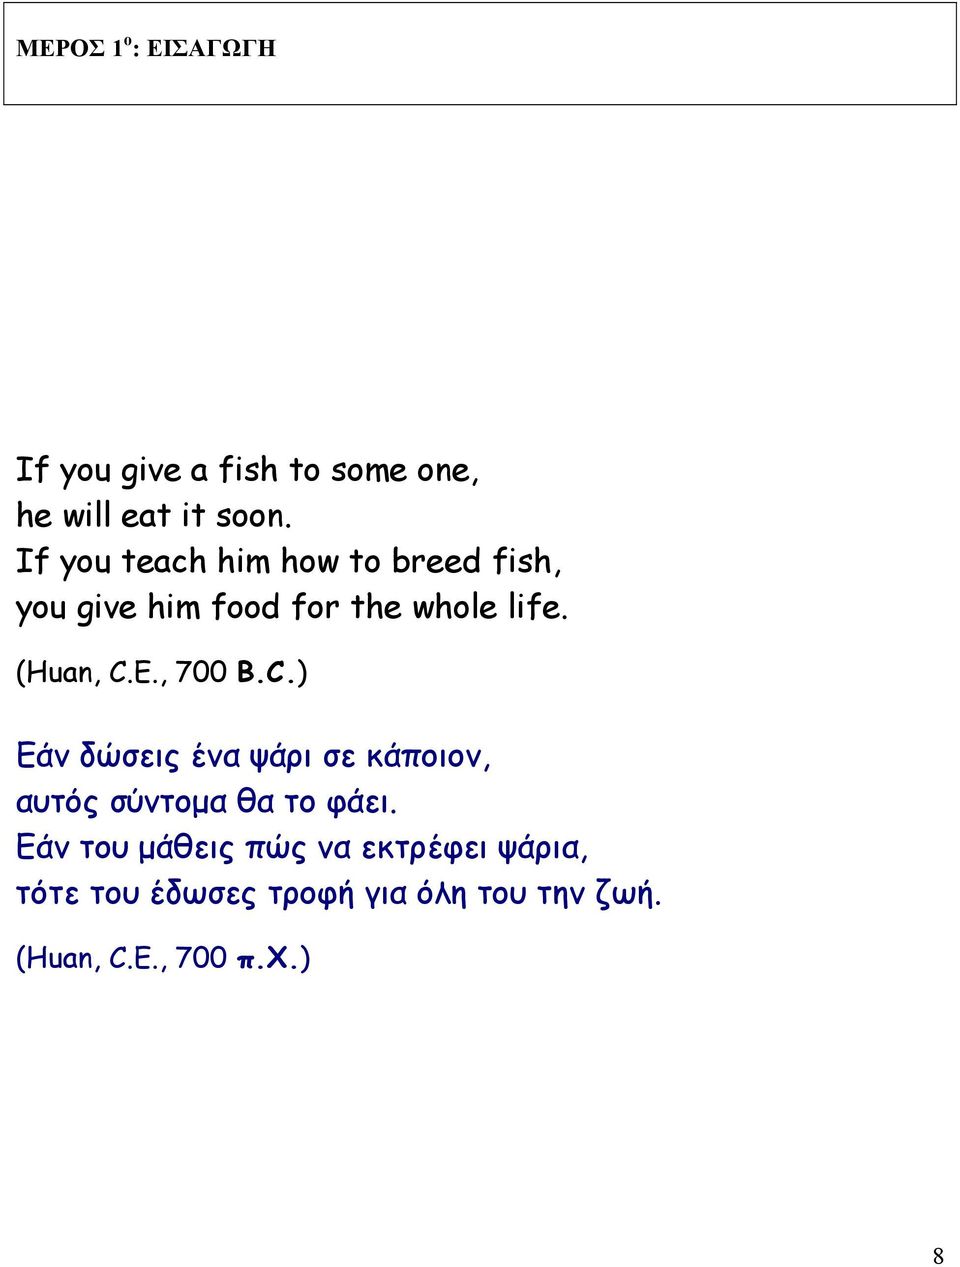 E., 700 B.C.) Εάν δώσεις ένα ψάρι σε κάποιον, αυτός σύντοµα θα το φάει.